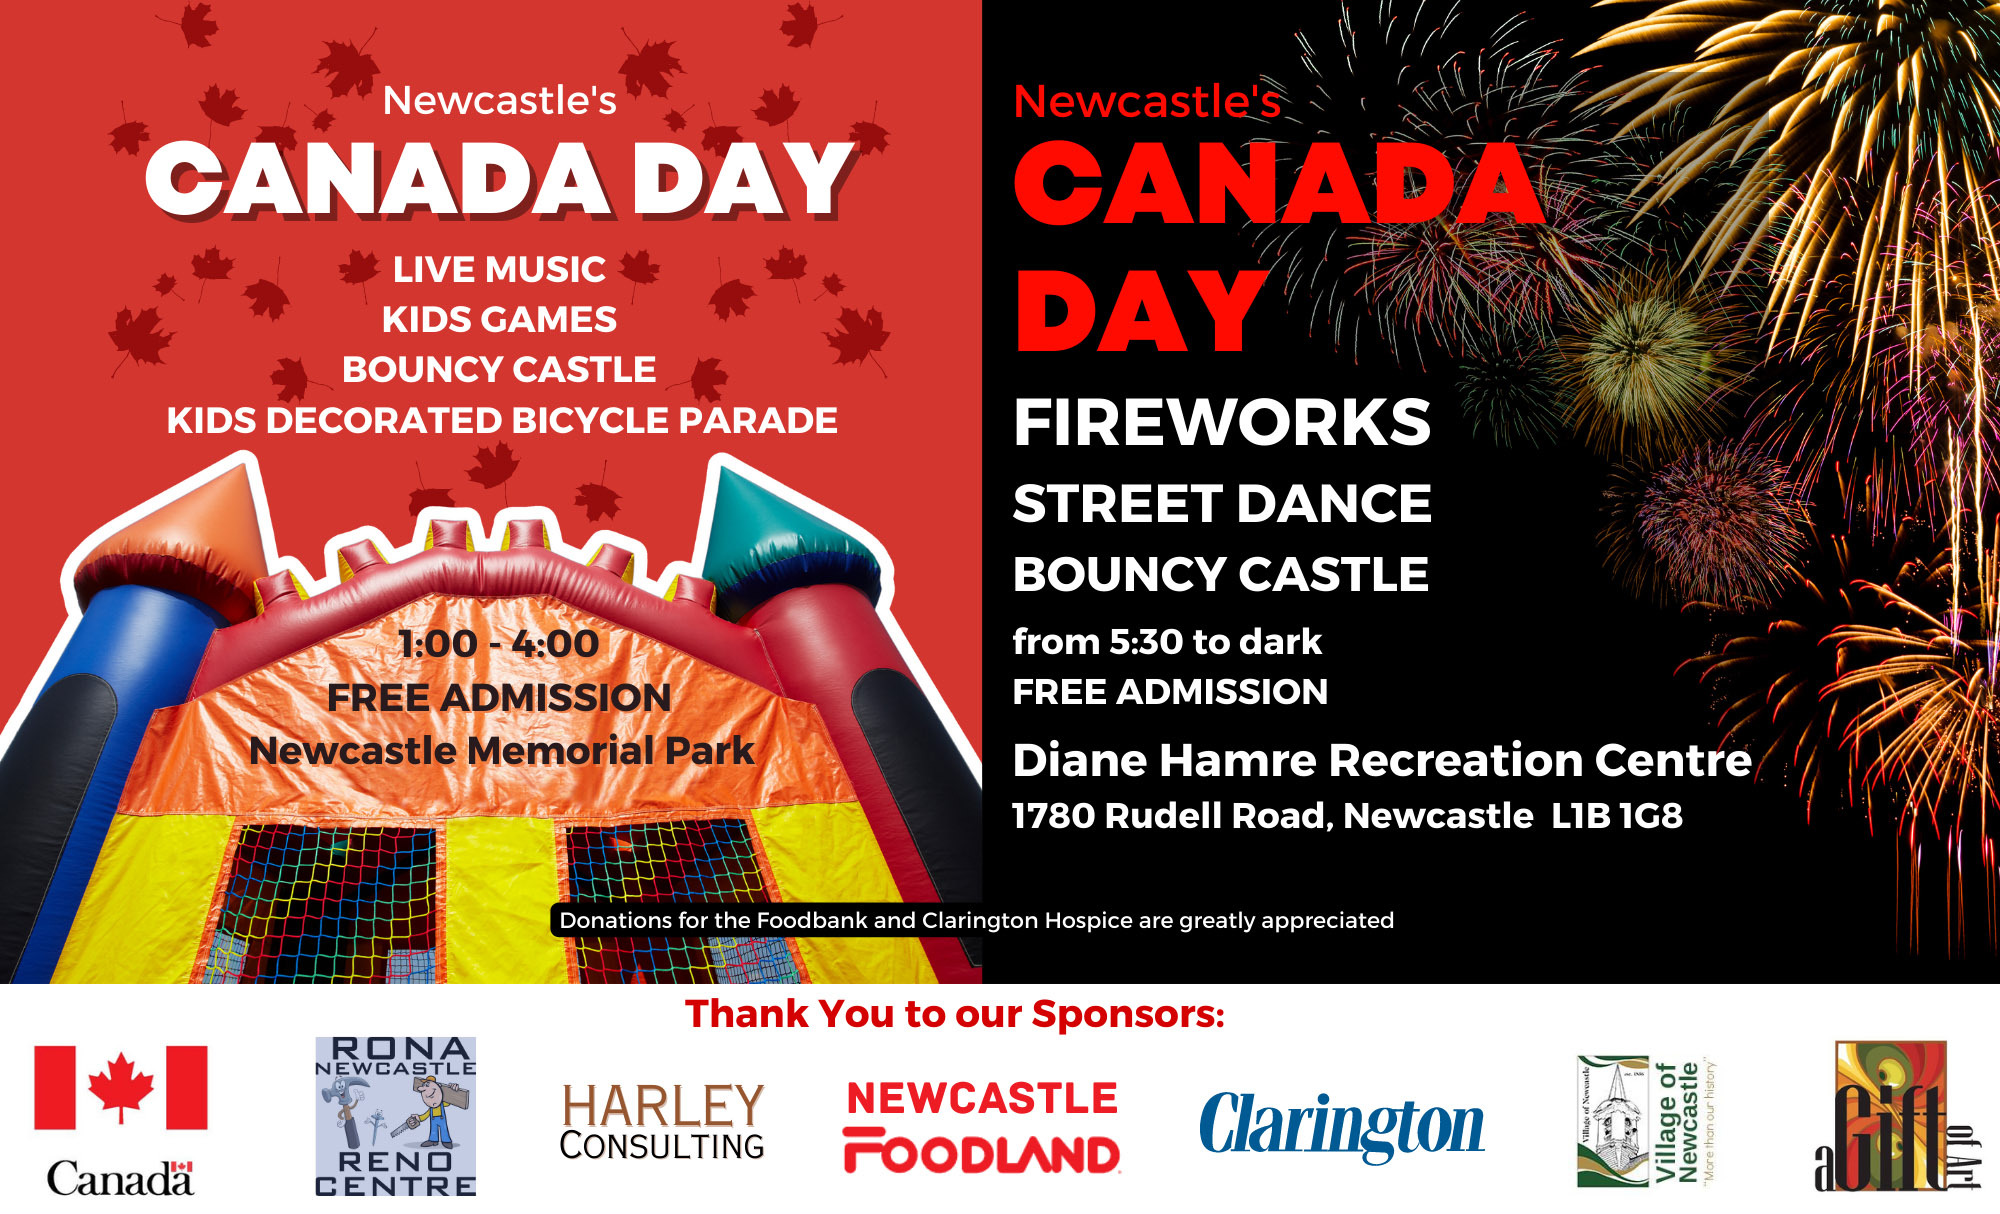 Newcastle's Canada Day